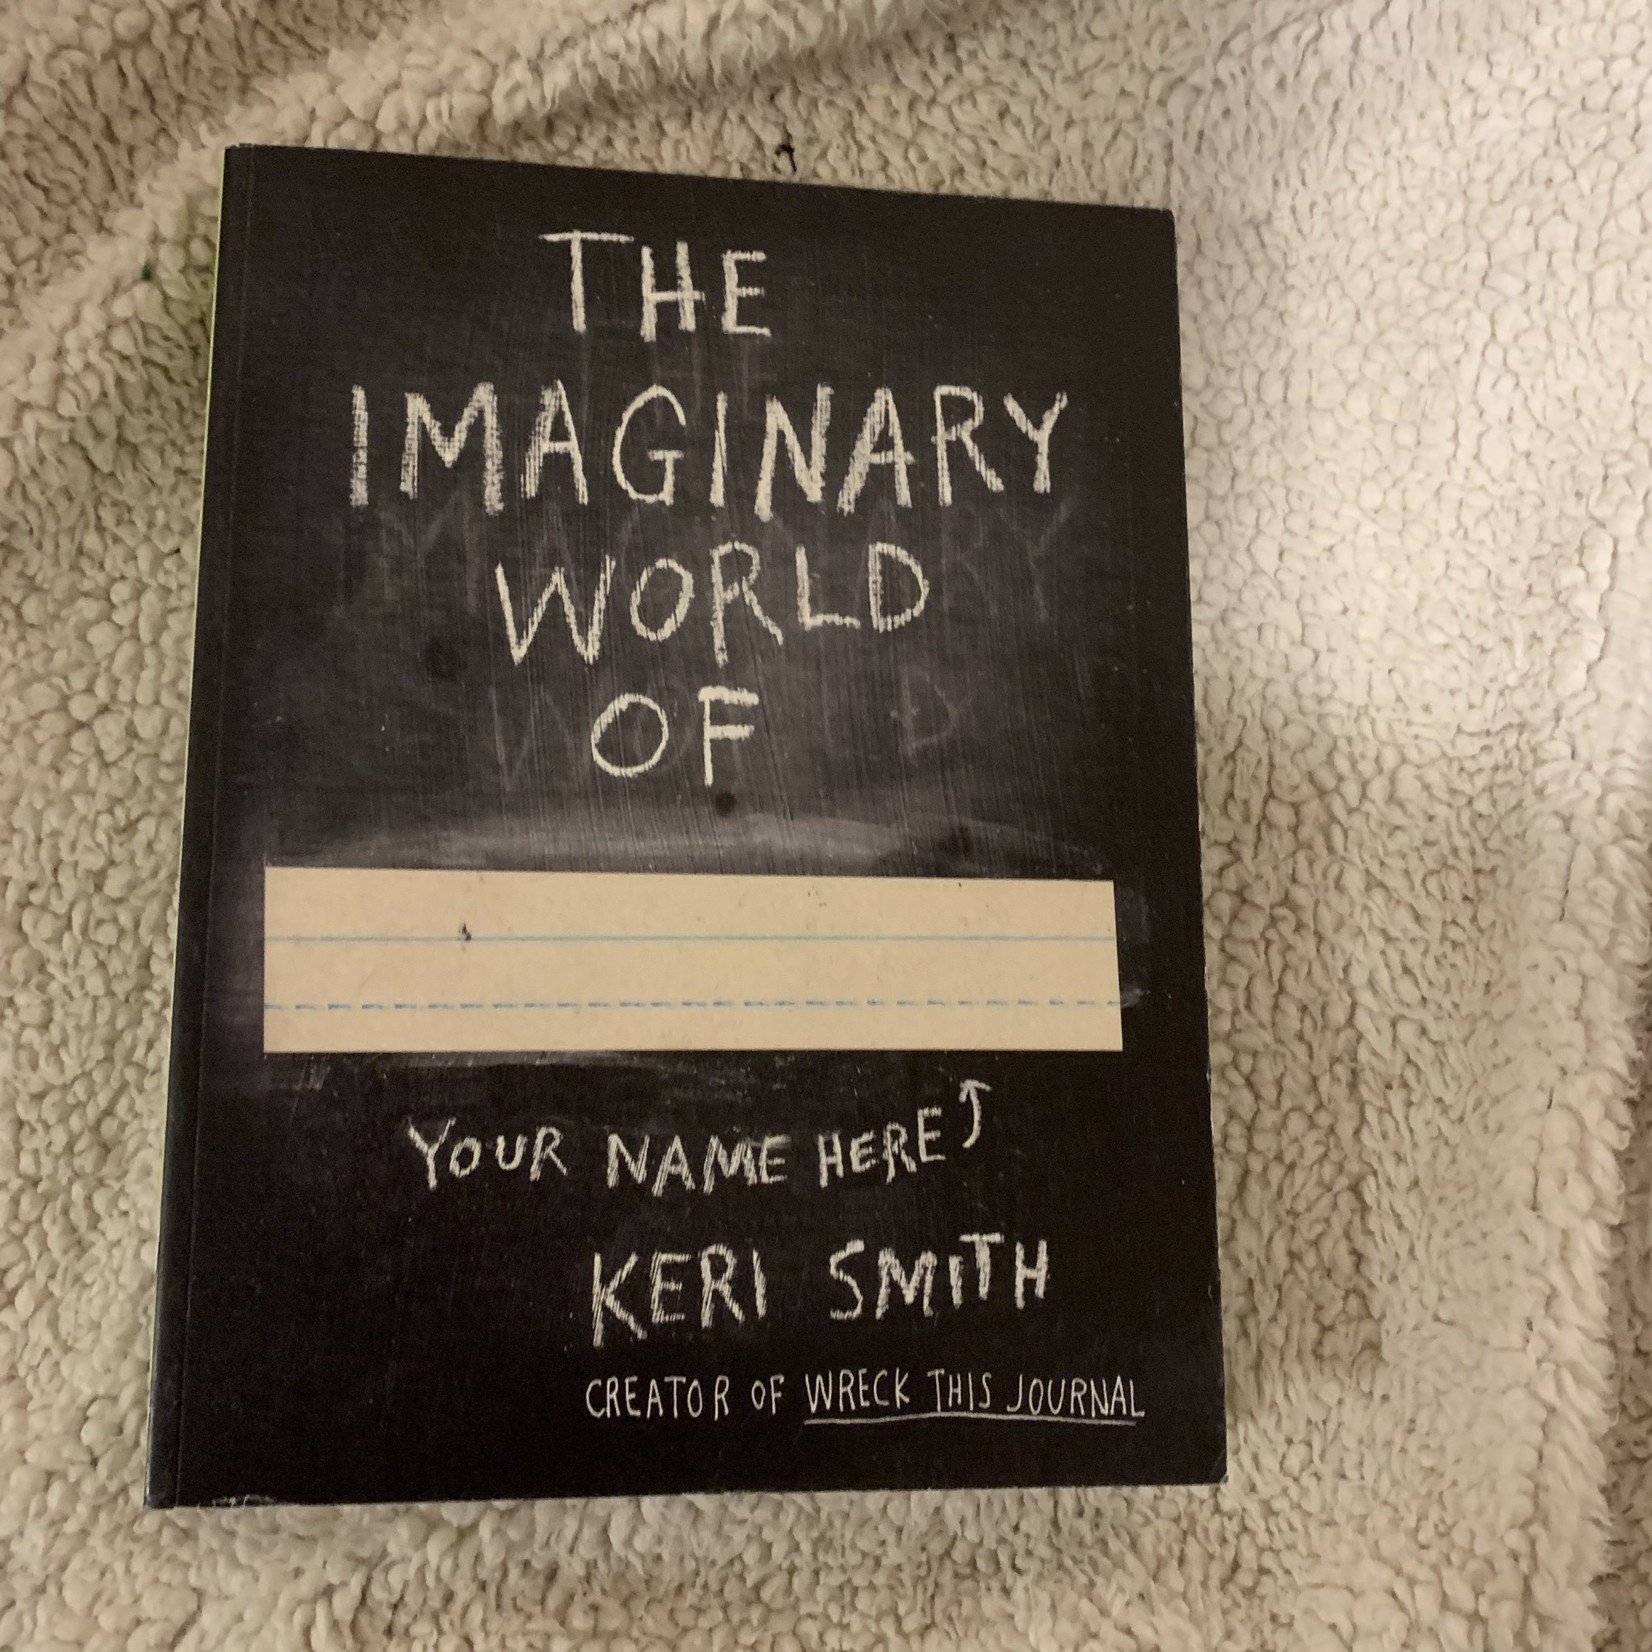 Keri Smith The Imaginary World of ________